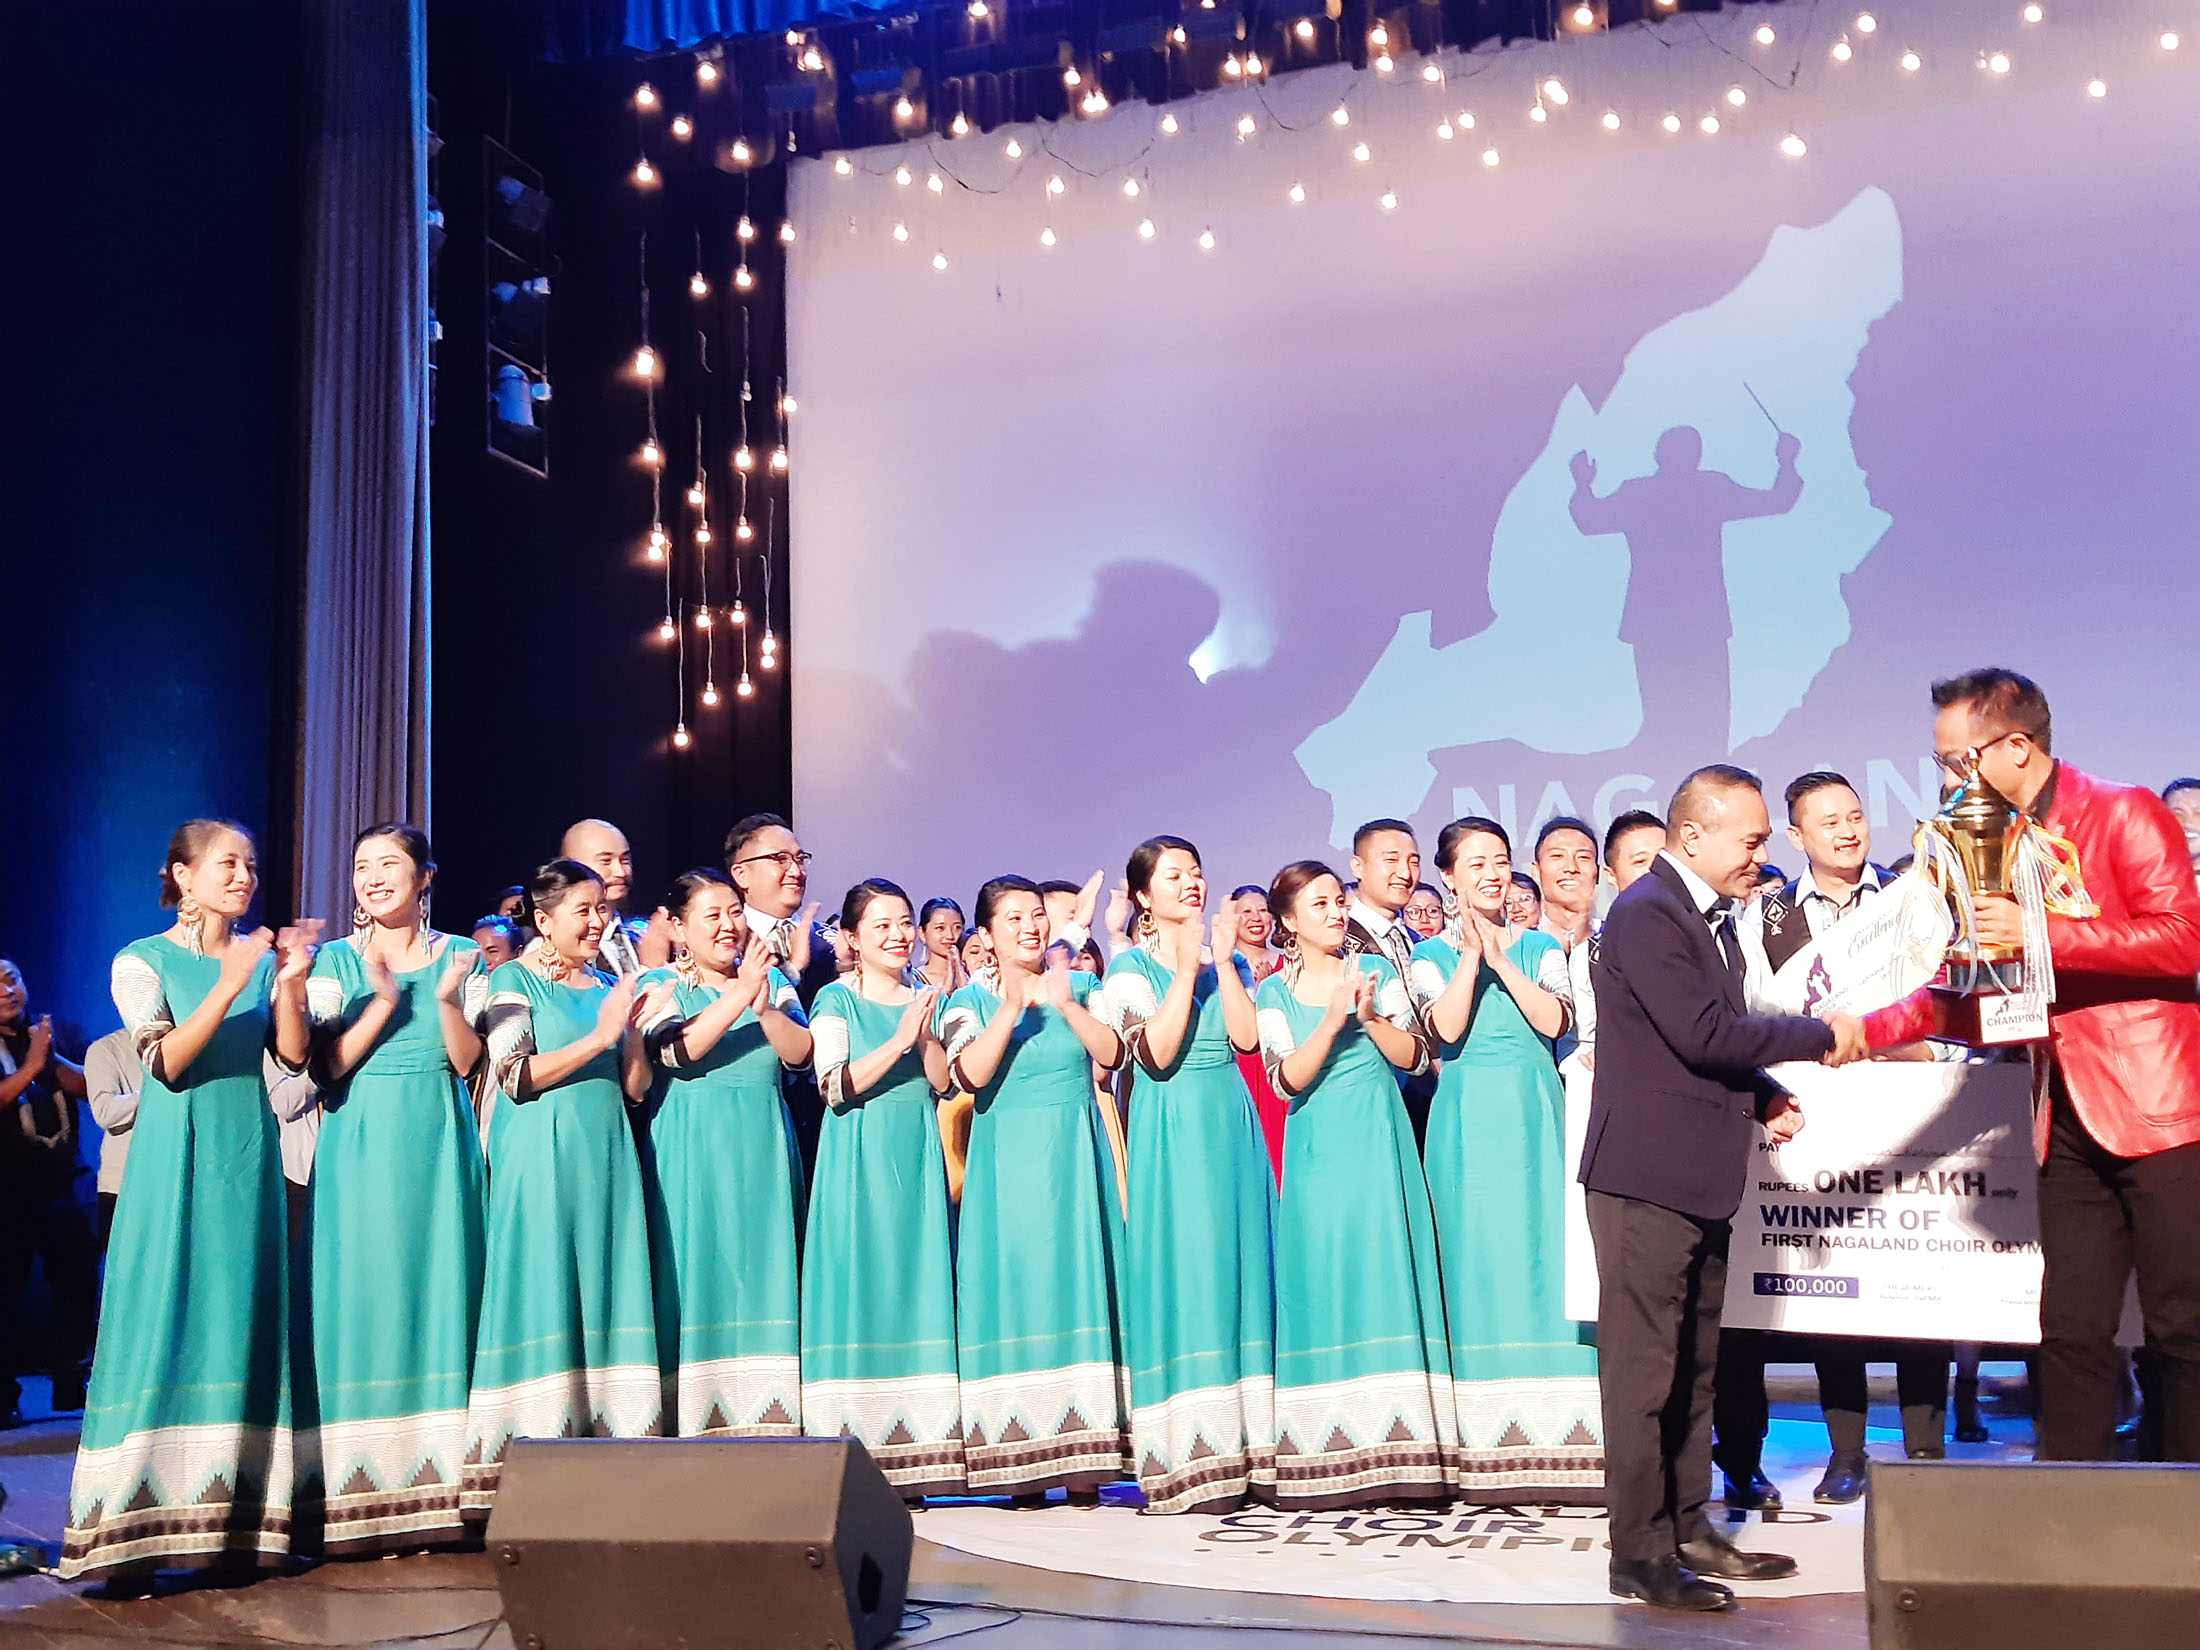 Harmonic Voices is winner of 1st Nagaland Choir Olympics